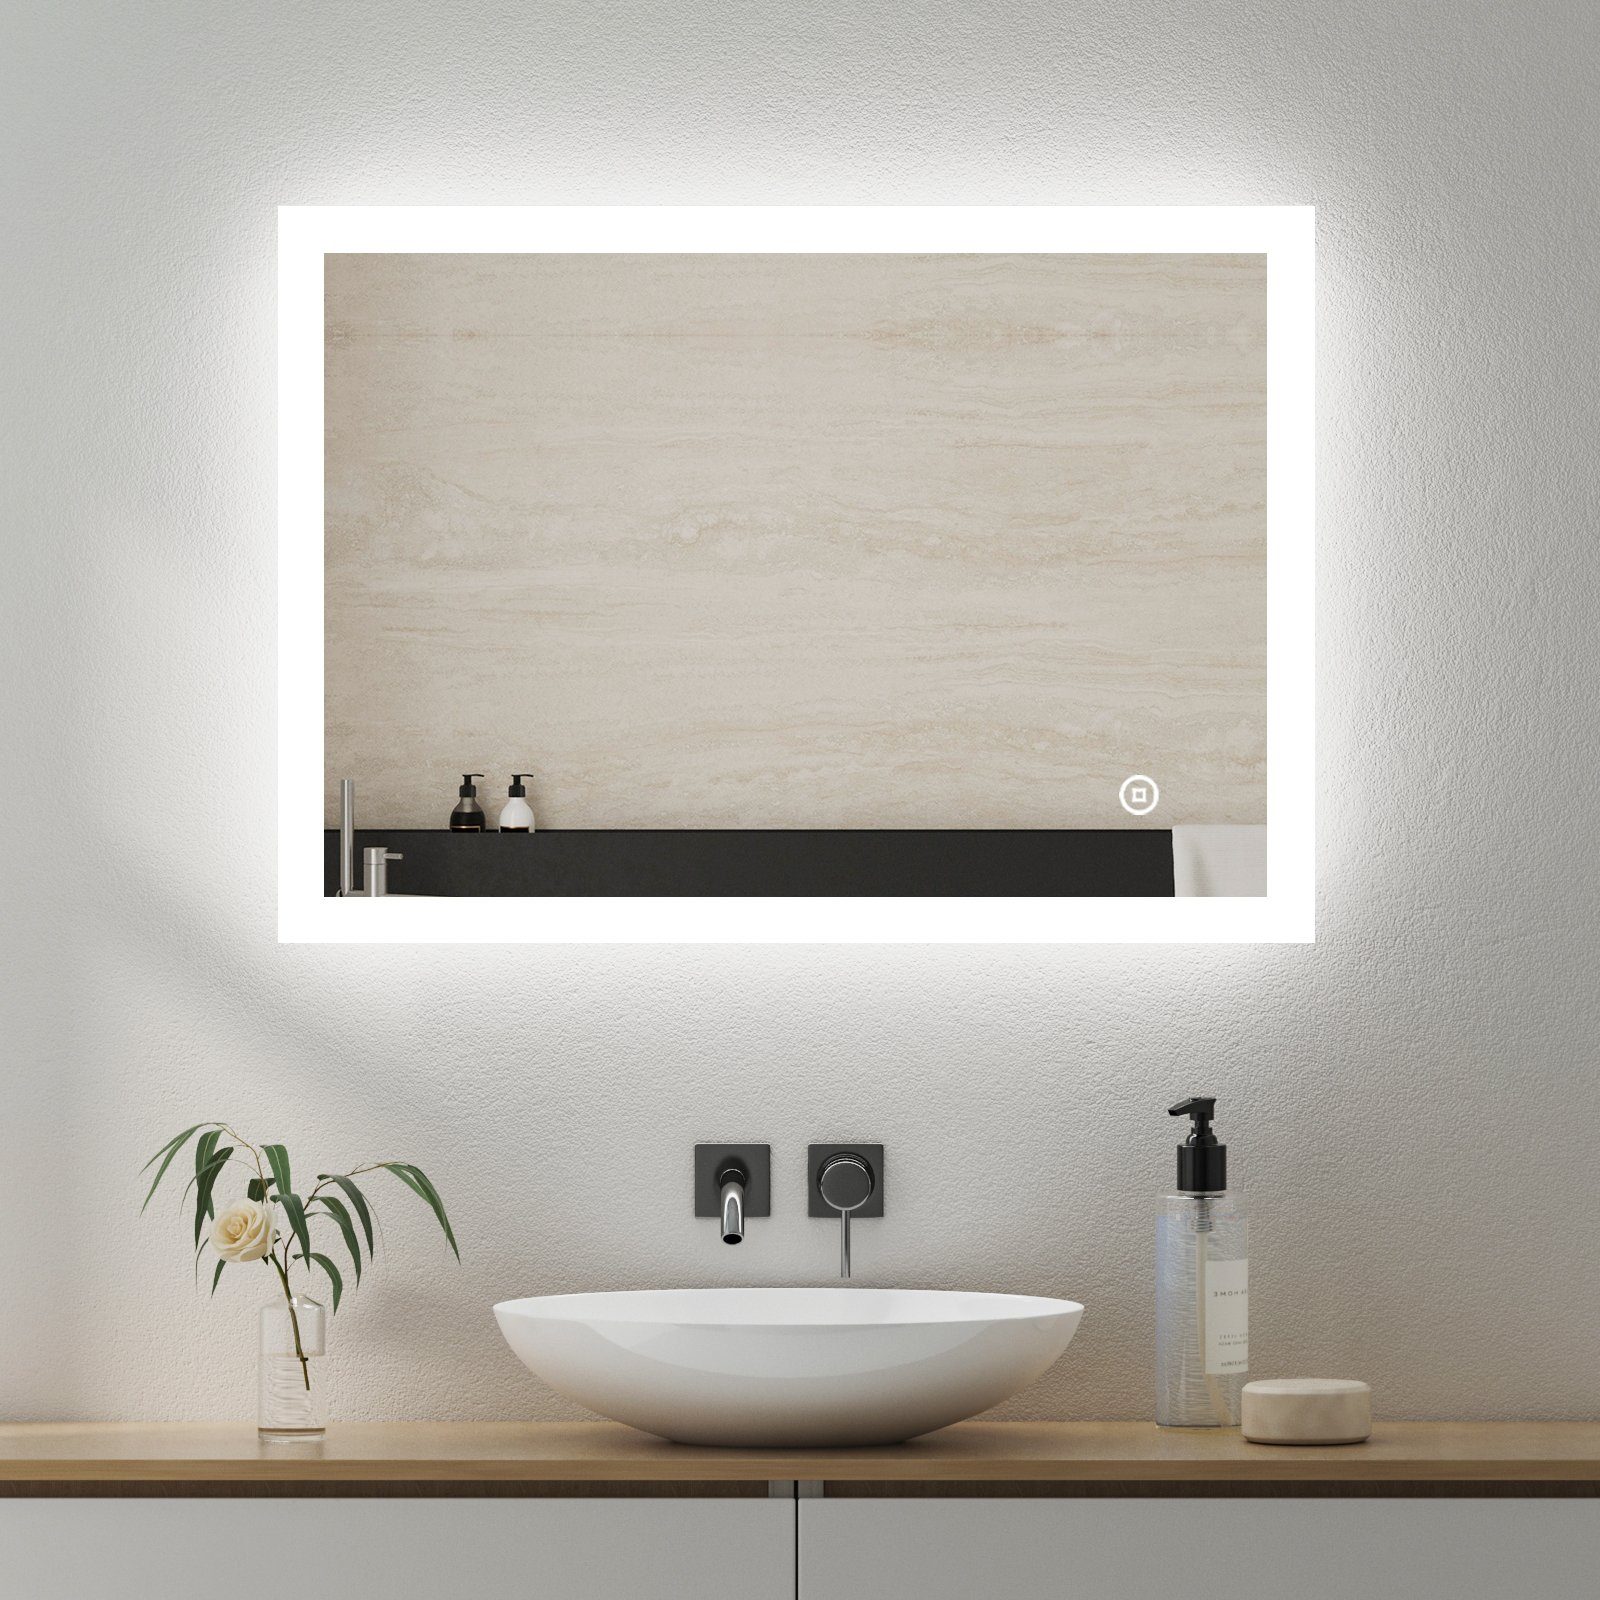 Bad Badezimmer Spiegel Regal Ablagen Wandspiegel 79 x 73 cm Eiche Möbel  Mason kaufen bei